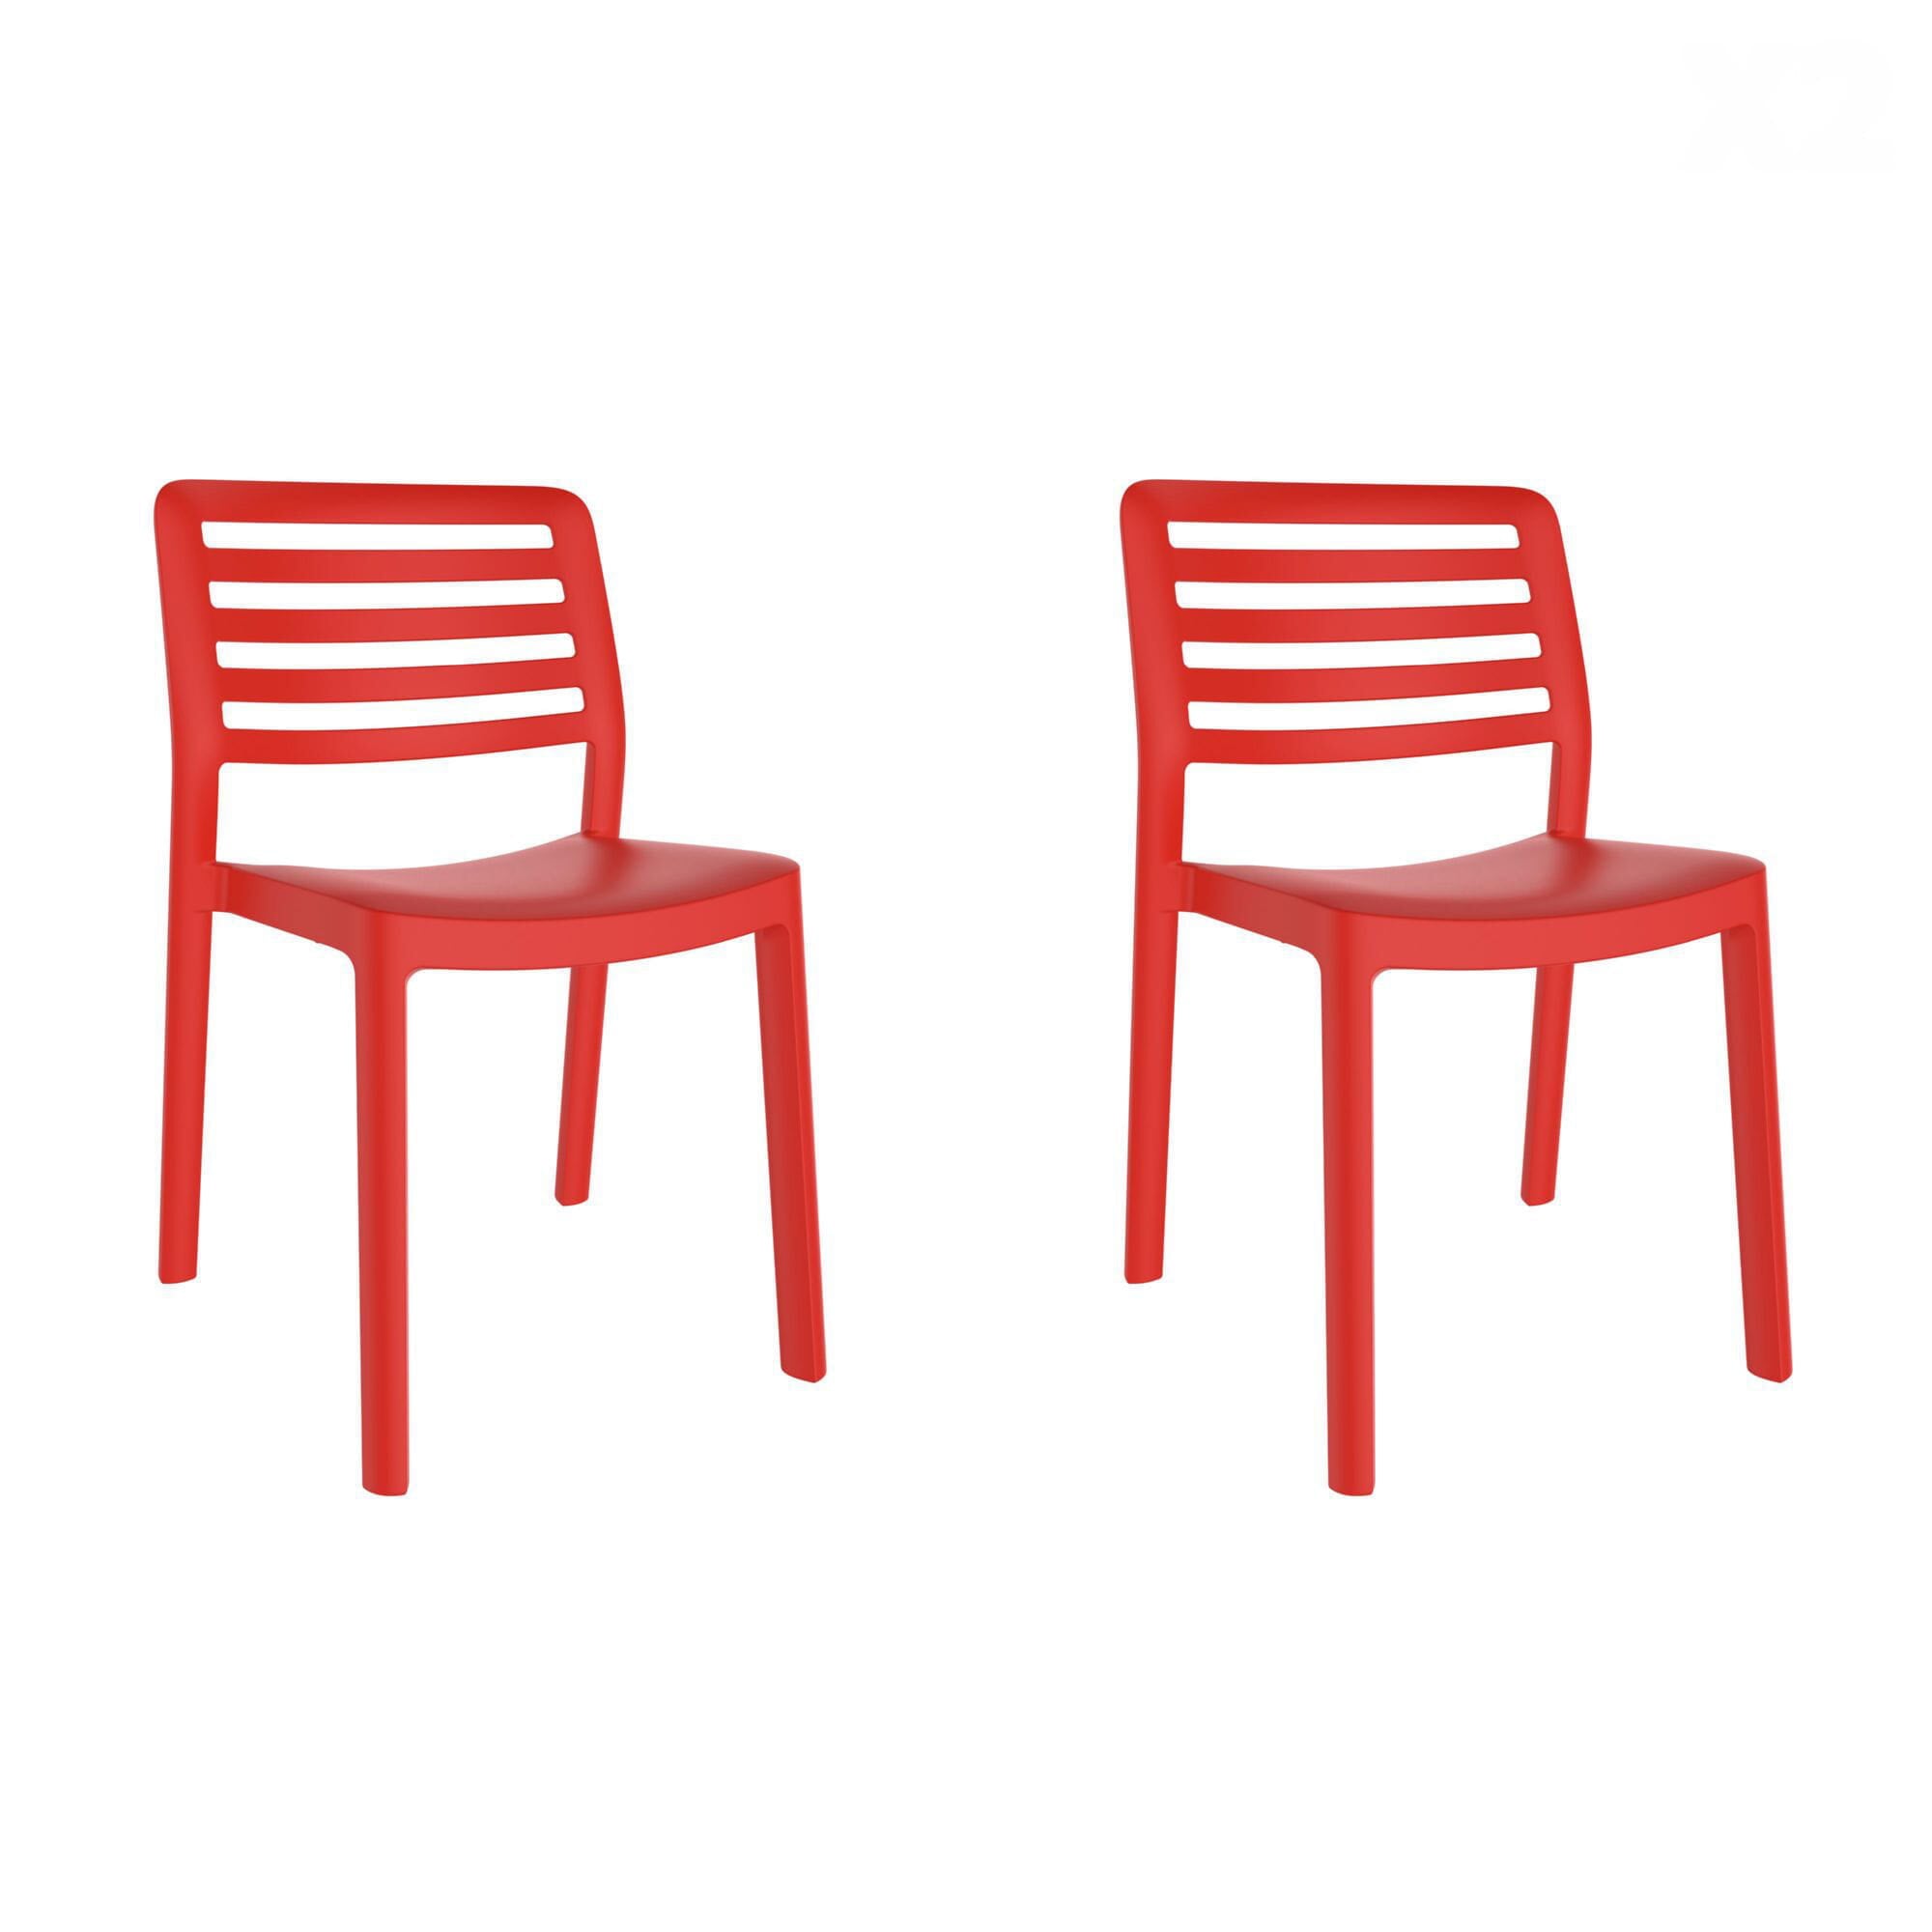 Garbar Windchair indoors, outdoor set 2 red